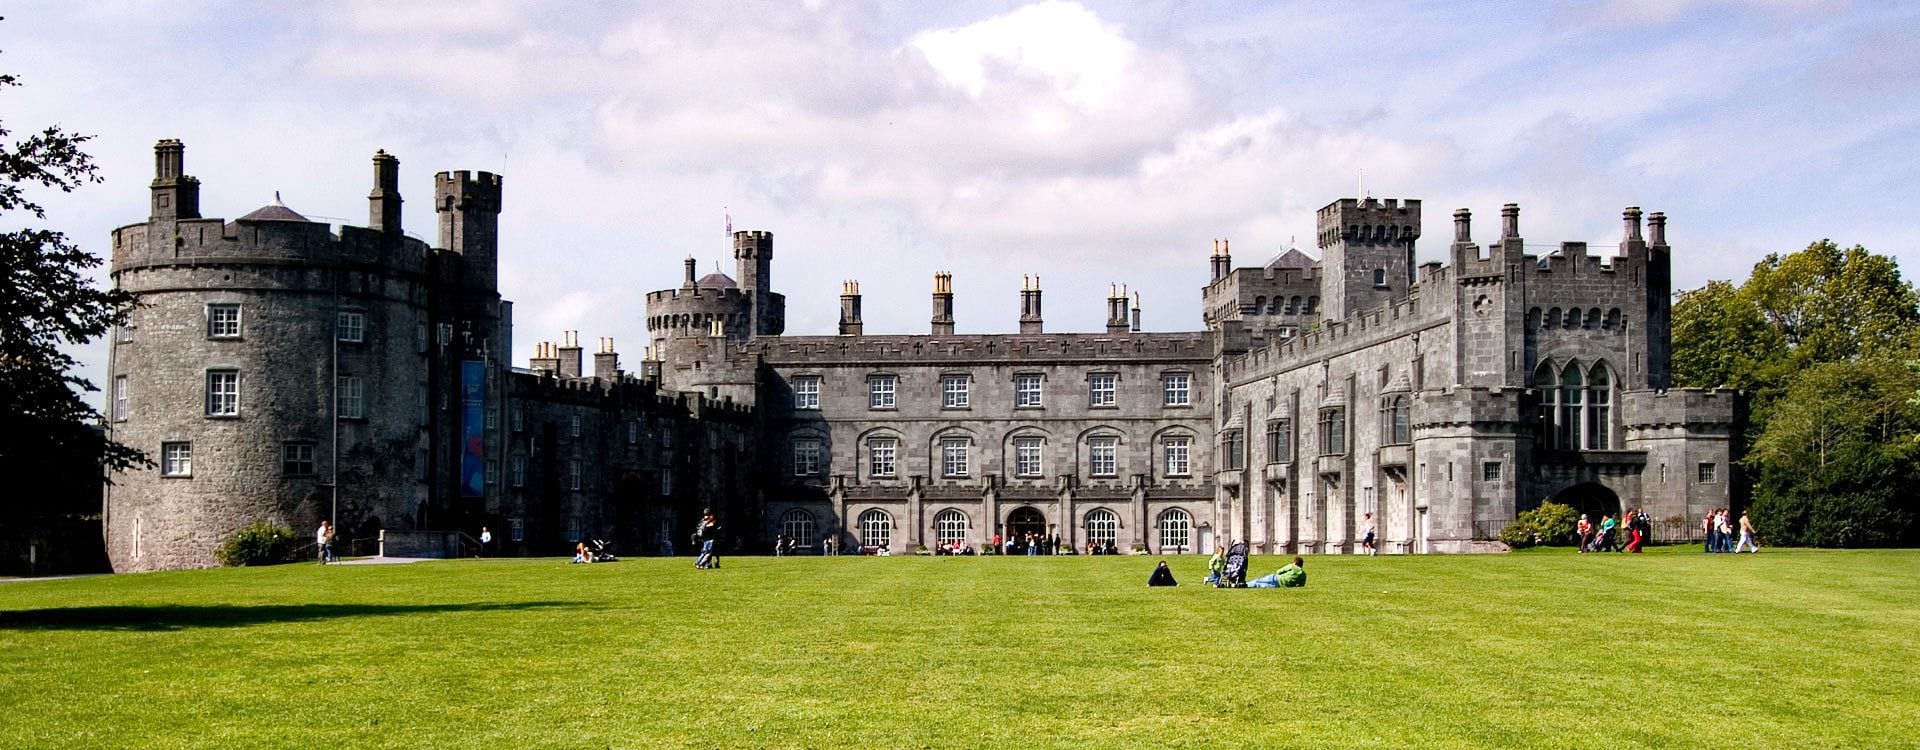 Il castello di Kilkenny